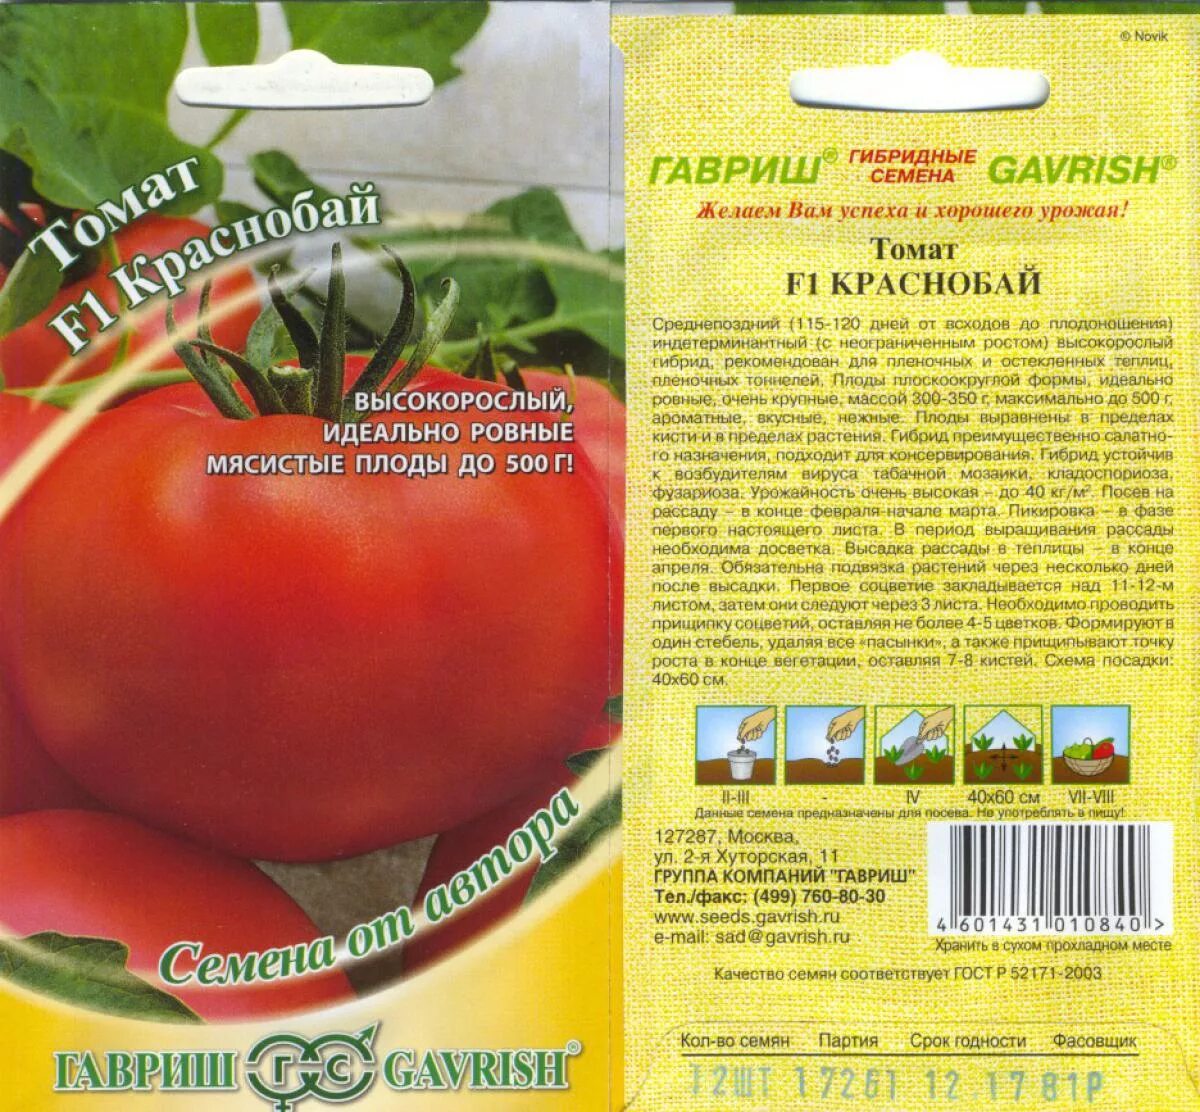 Название семян помидор. Семена томат Краснобай f1. Томат фараон f1. Томат Краснобай 12 шт. Томат Краснобай, семена Гавриш.